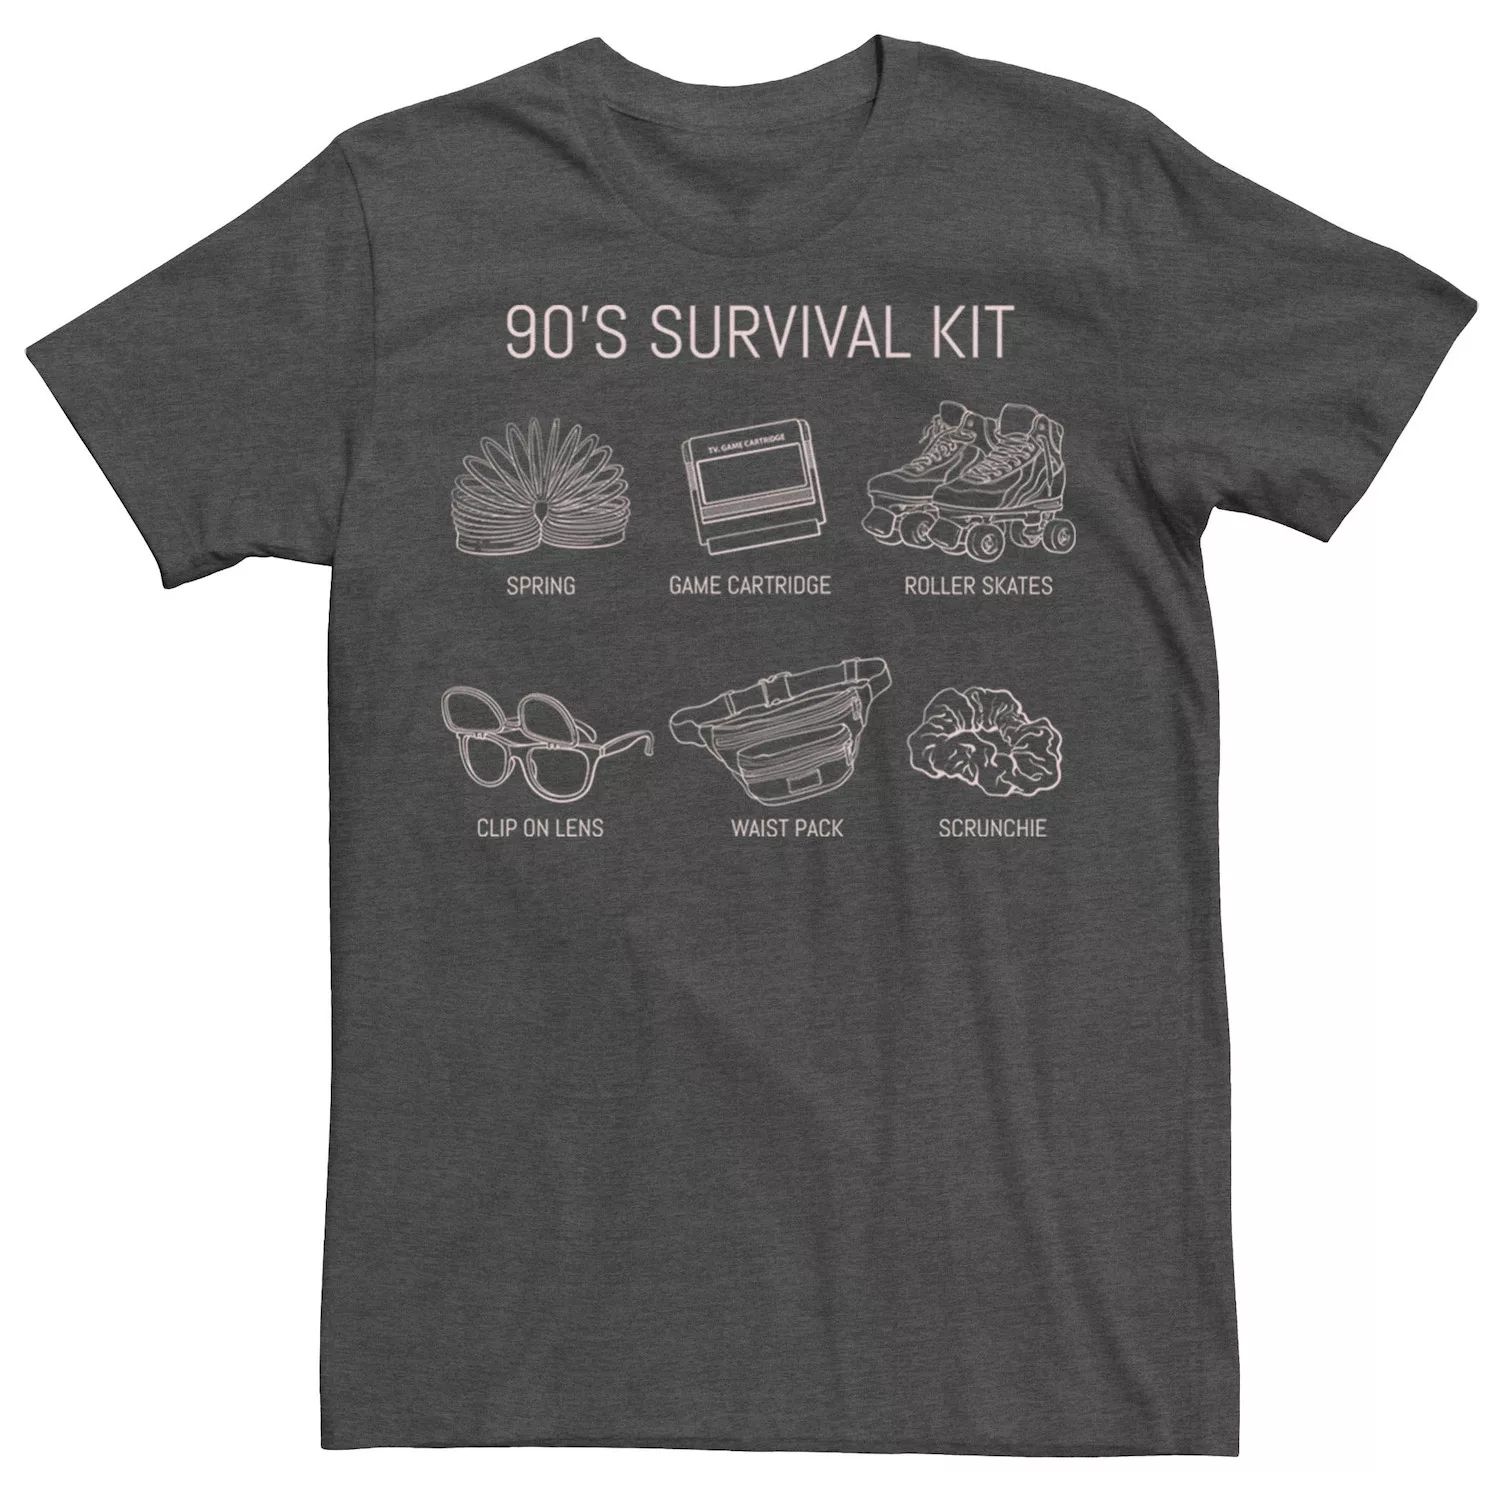 

Мужская футболка для выживания в стиле 90-х с коллажем и эскизом Licensed Character